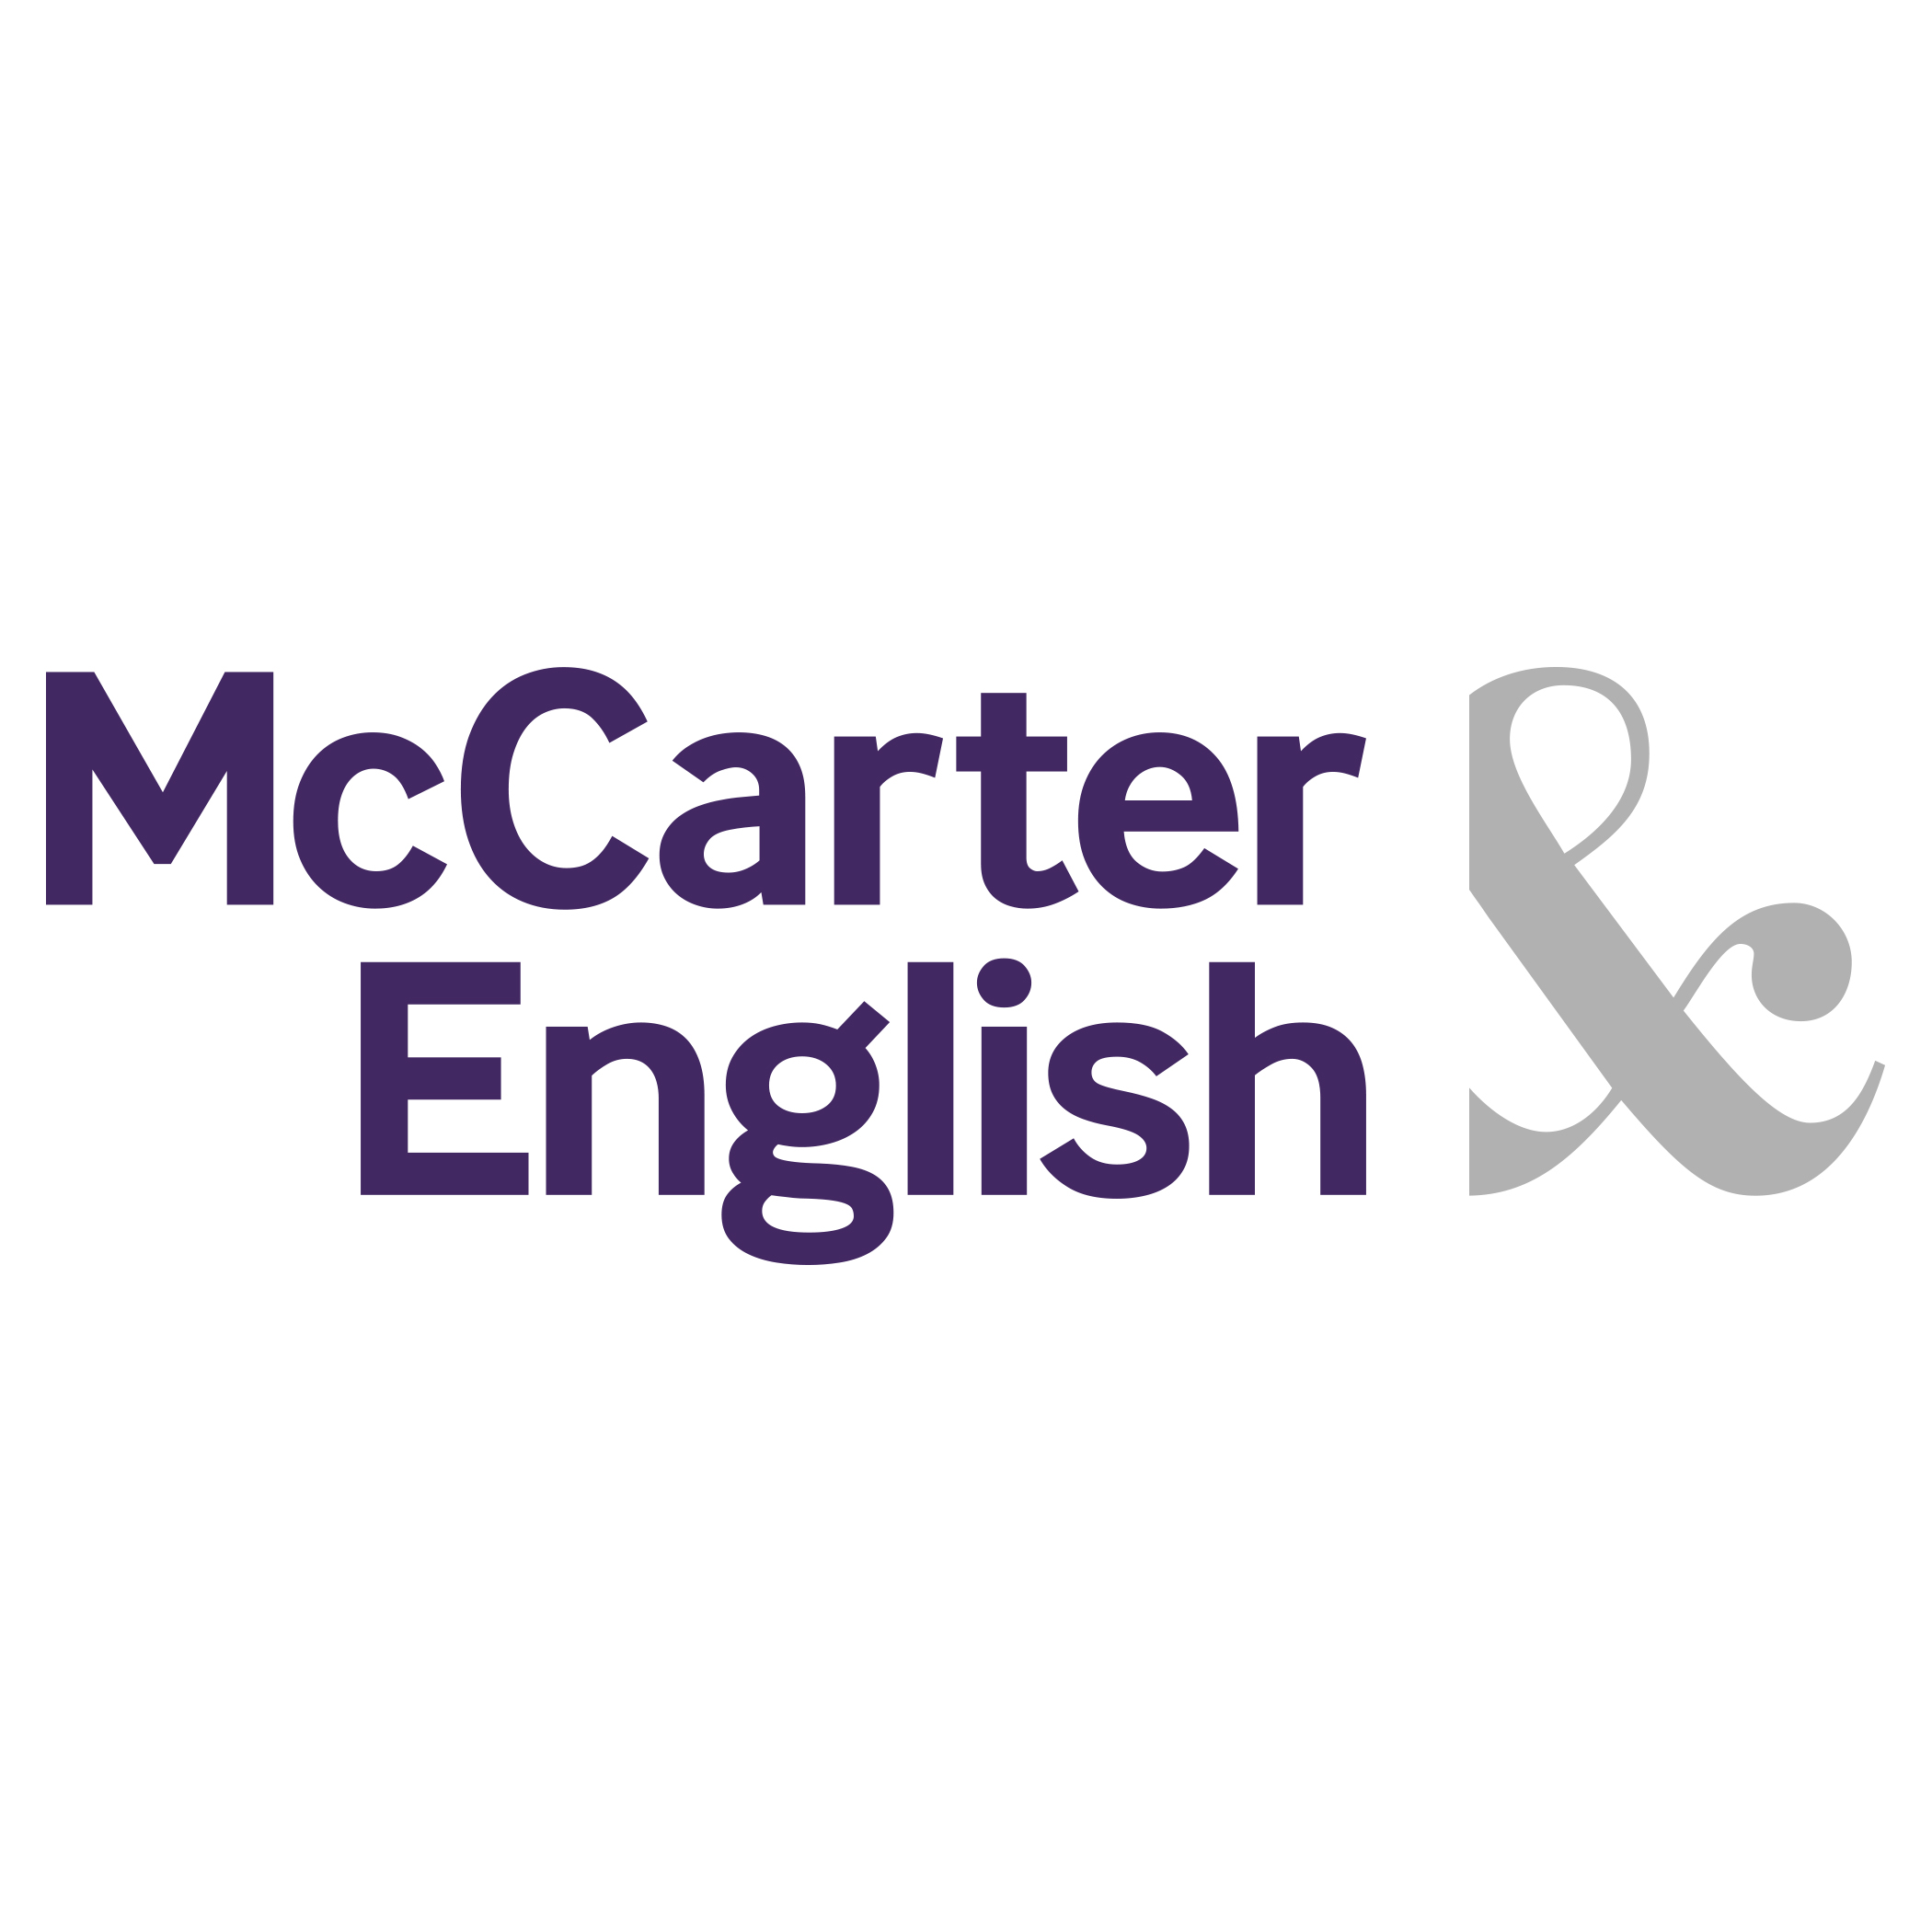 McCarter & English